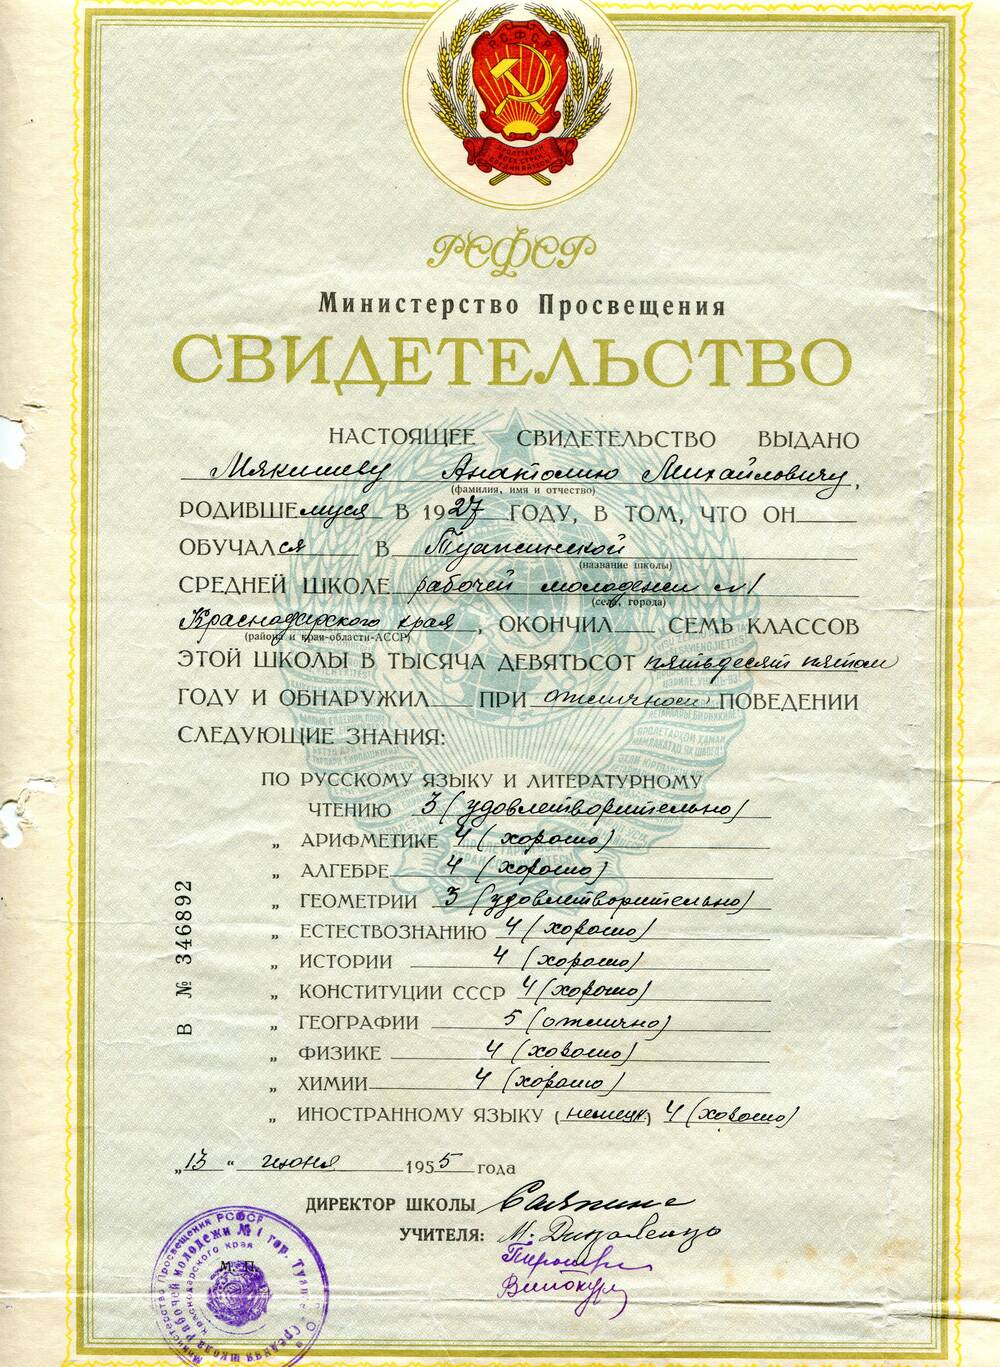 Свидетельство В № 346892 выдано Мякишеву Анатолию Михайловичу, родившемуся в 1927 году, об окончании Туапсинской средней школы рабочей молодежи № 1 Краснодарского края.